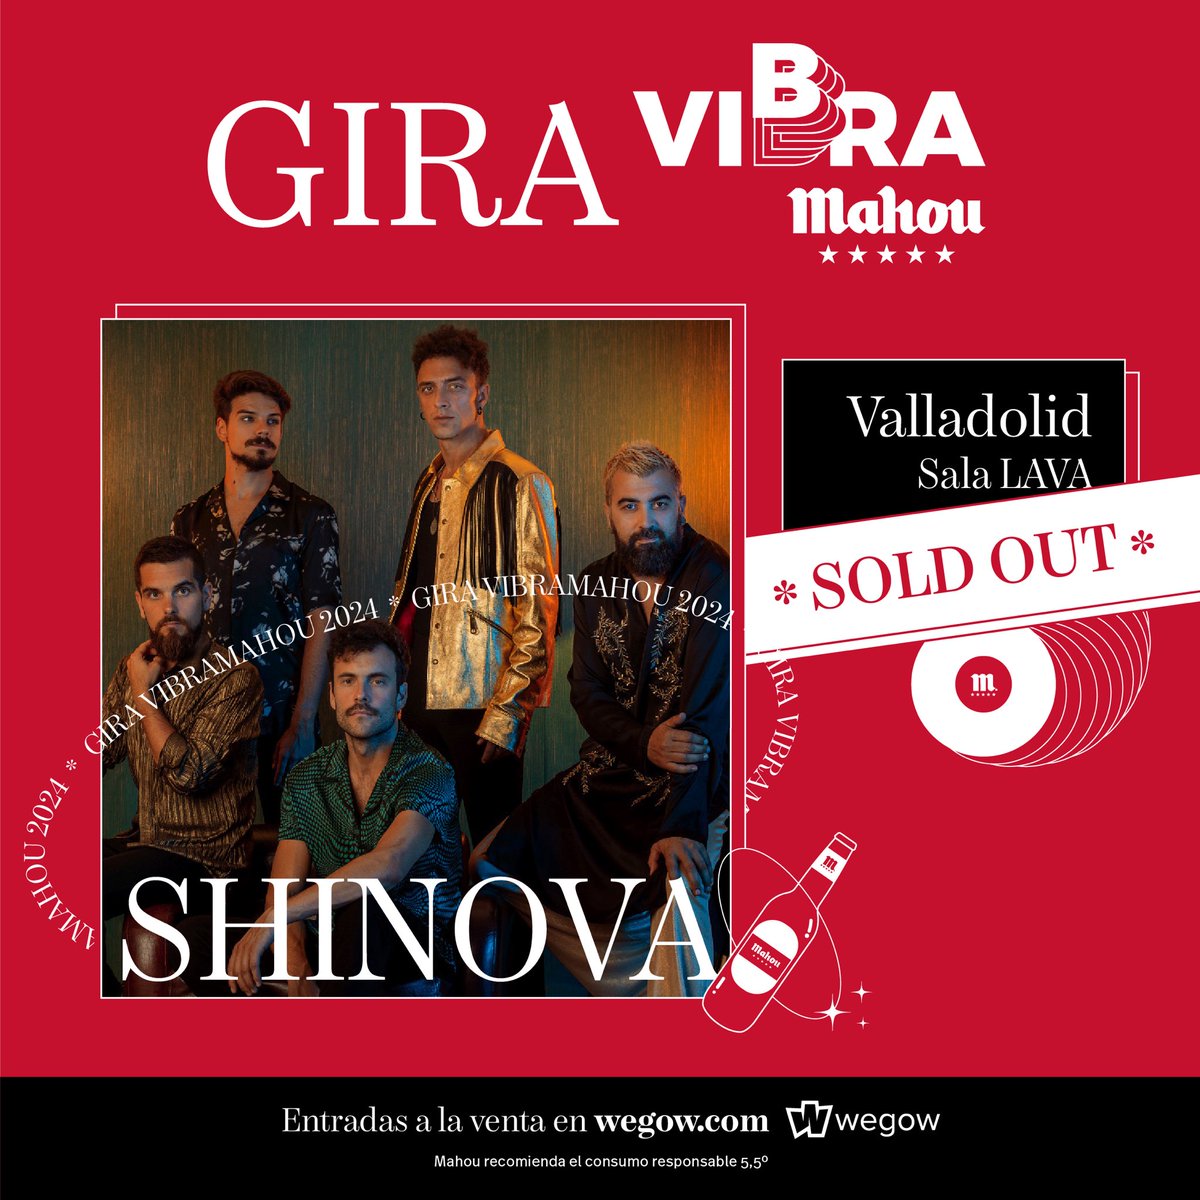 ¡Es HOY Valladolid! Arrancamos la Gira @VibraMahou 🔥 🚪 21:00 Apertura de puertas 🎤 22:00 Inicio de concierto